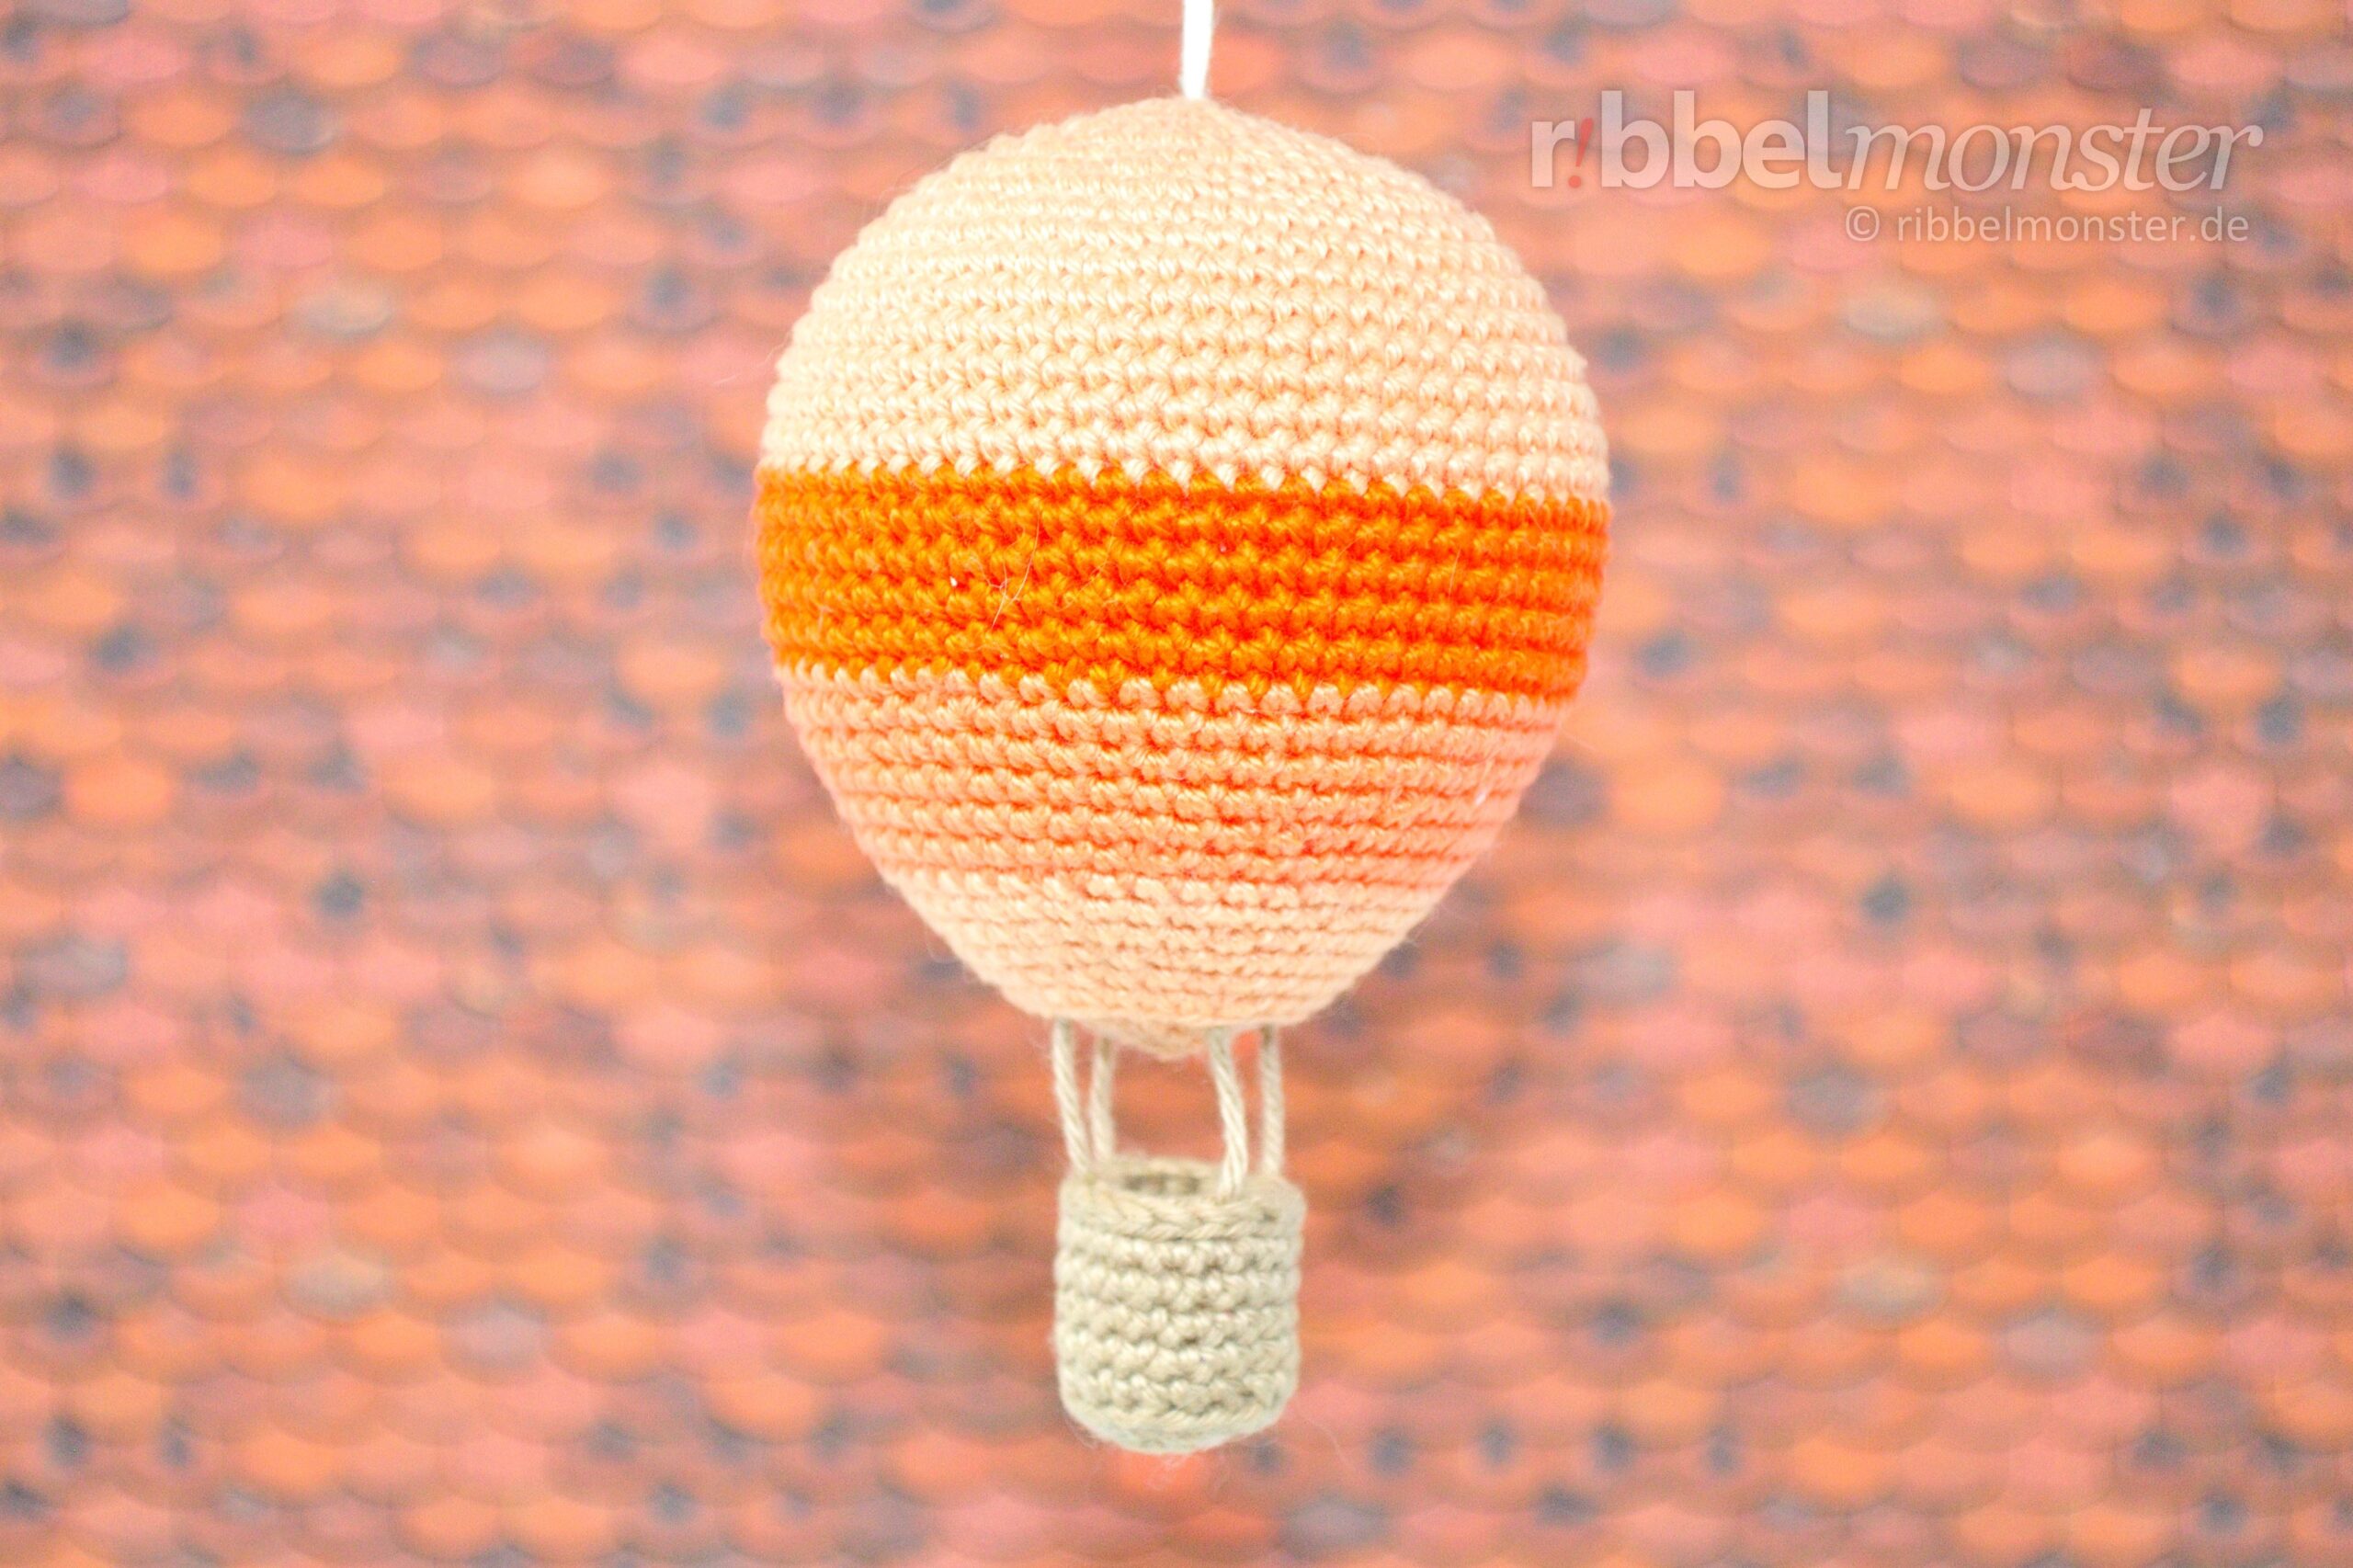 Amigurumi – Crochet Biggest Hot Air Balloon